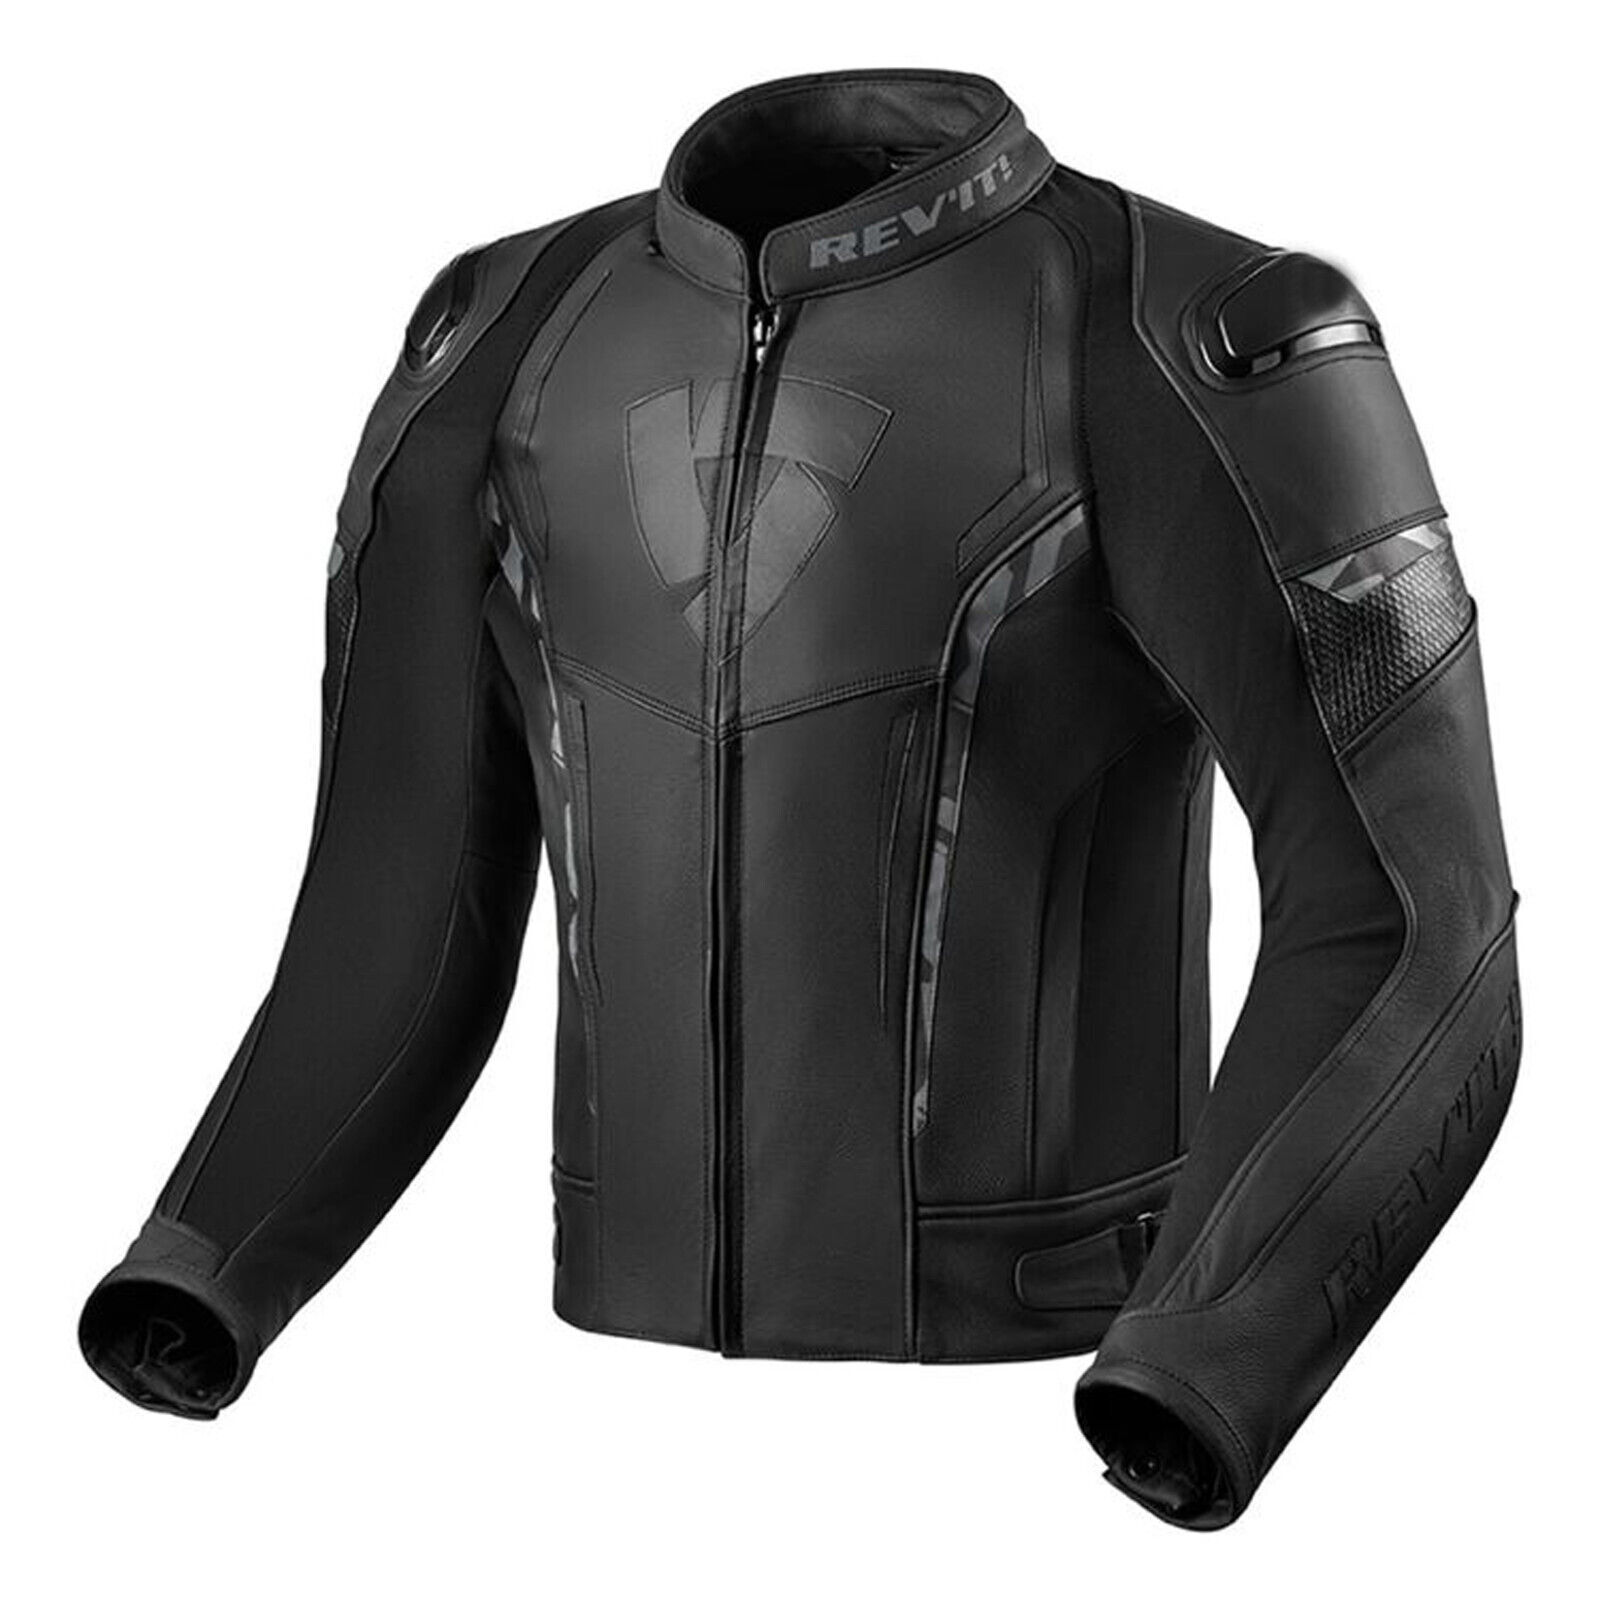 REV'IT Glide Motorbike Leather Jacket